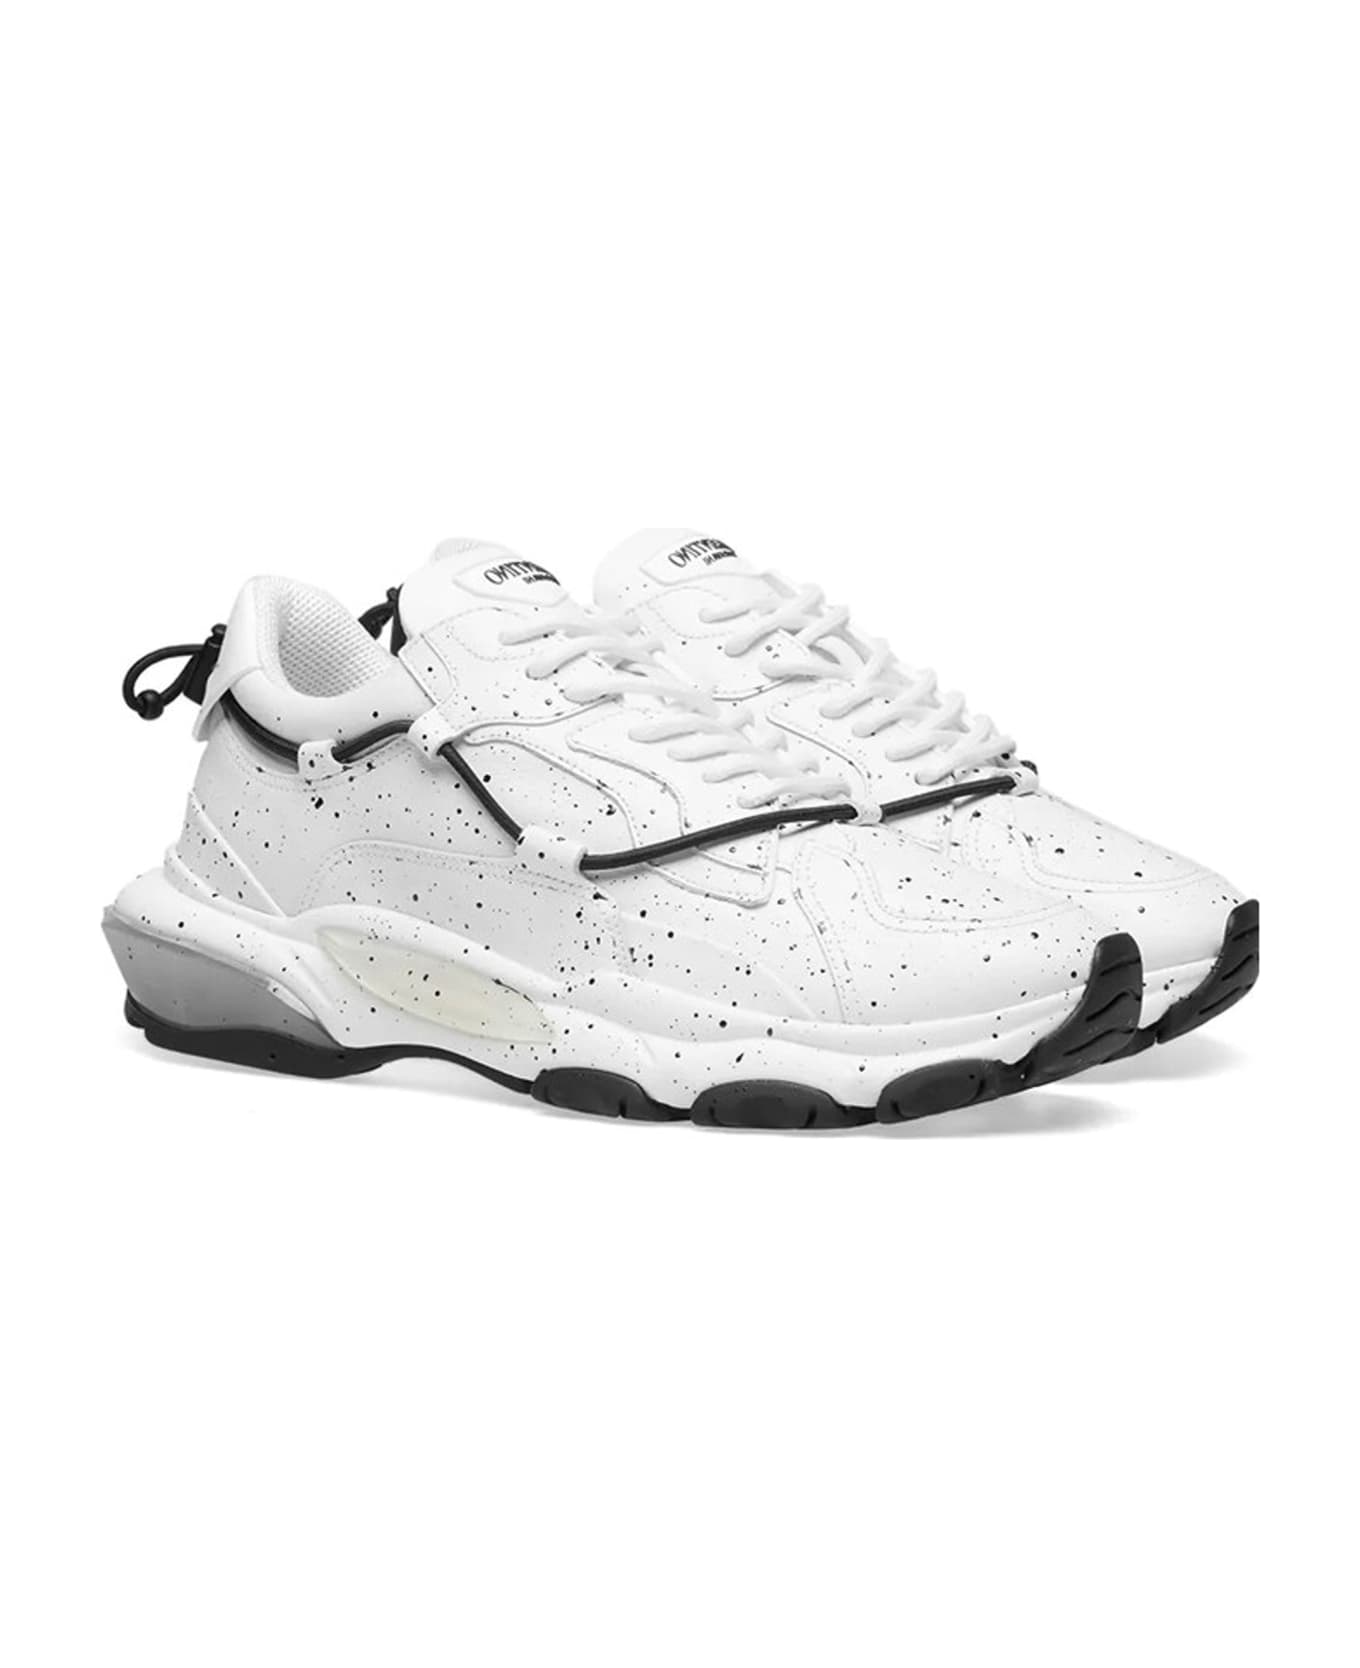 Valentino Garavani Bounce Leather Sneakers - White